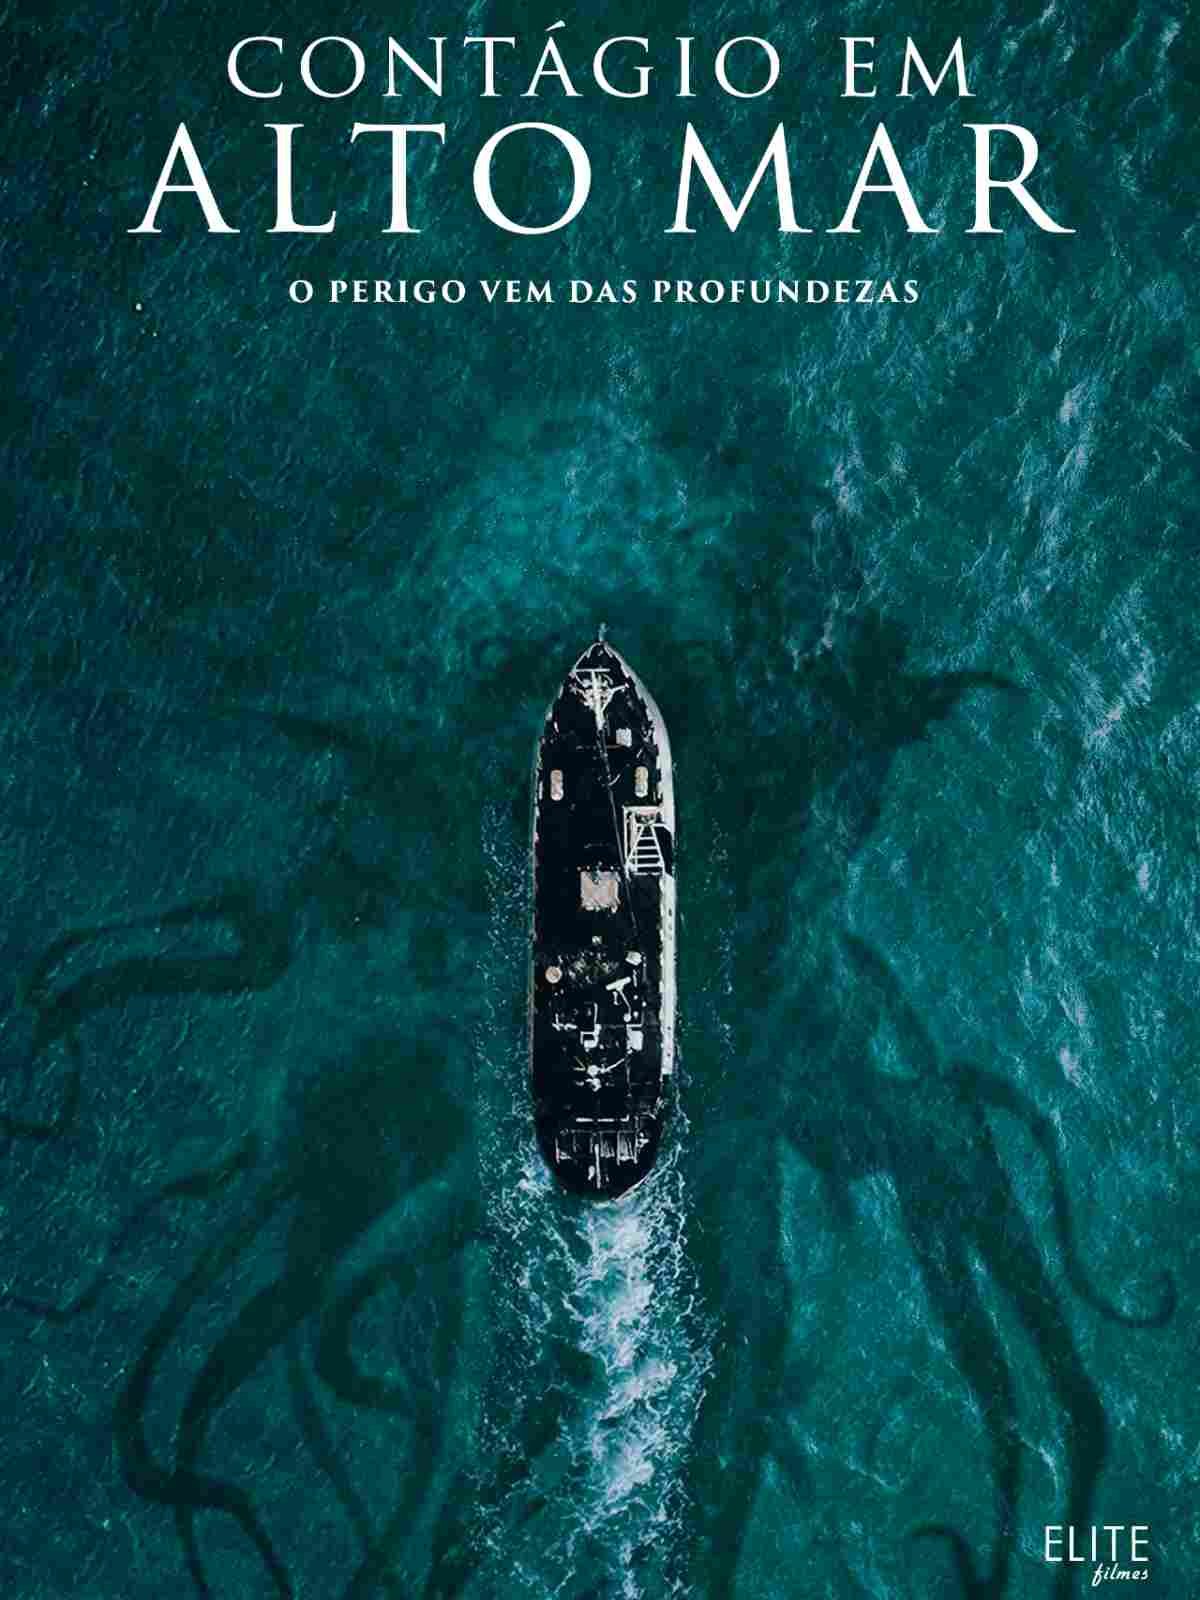 Contágio em Alto Mar | Filme de terror irlandês | Surto parasitário assola a tripulação de um barco de pesca